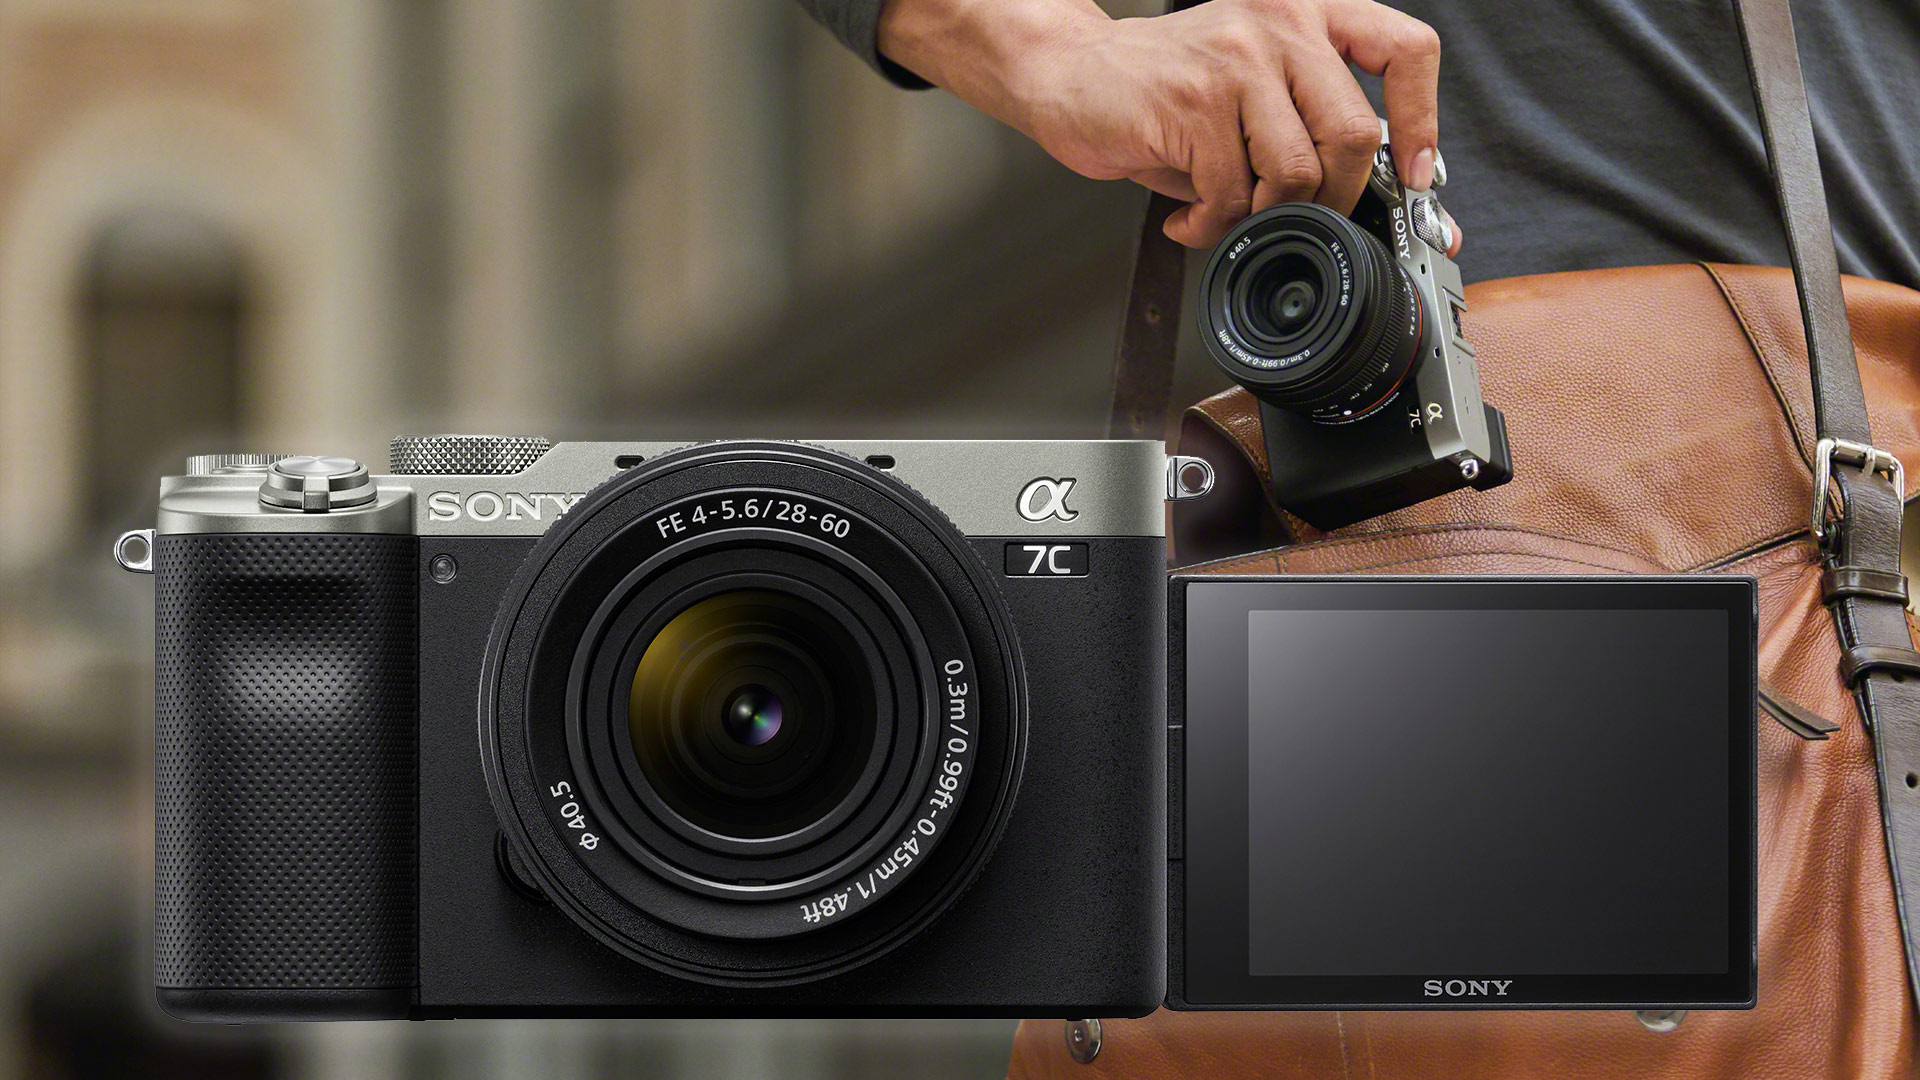 超高品質販売中 sony ボディ ブラック a7c デジタルカメラ